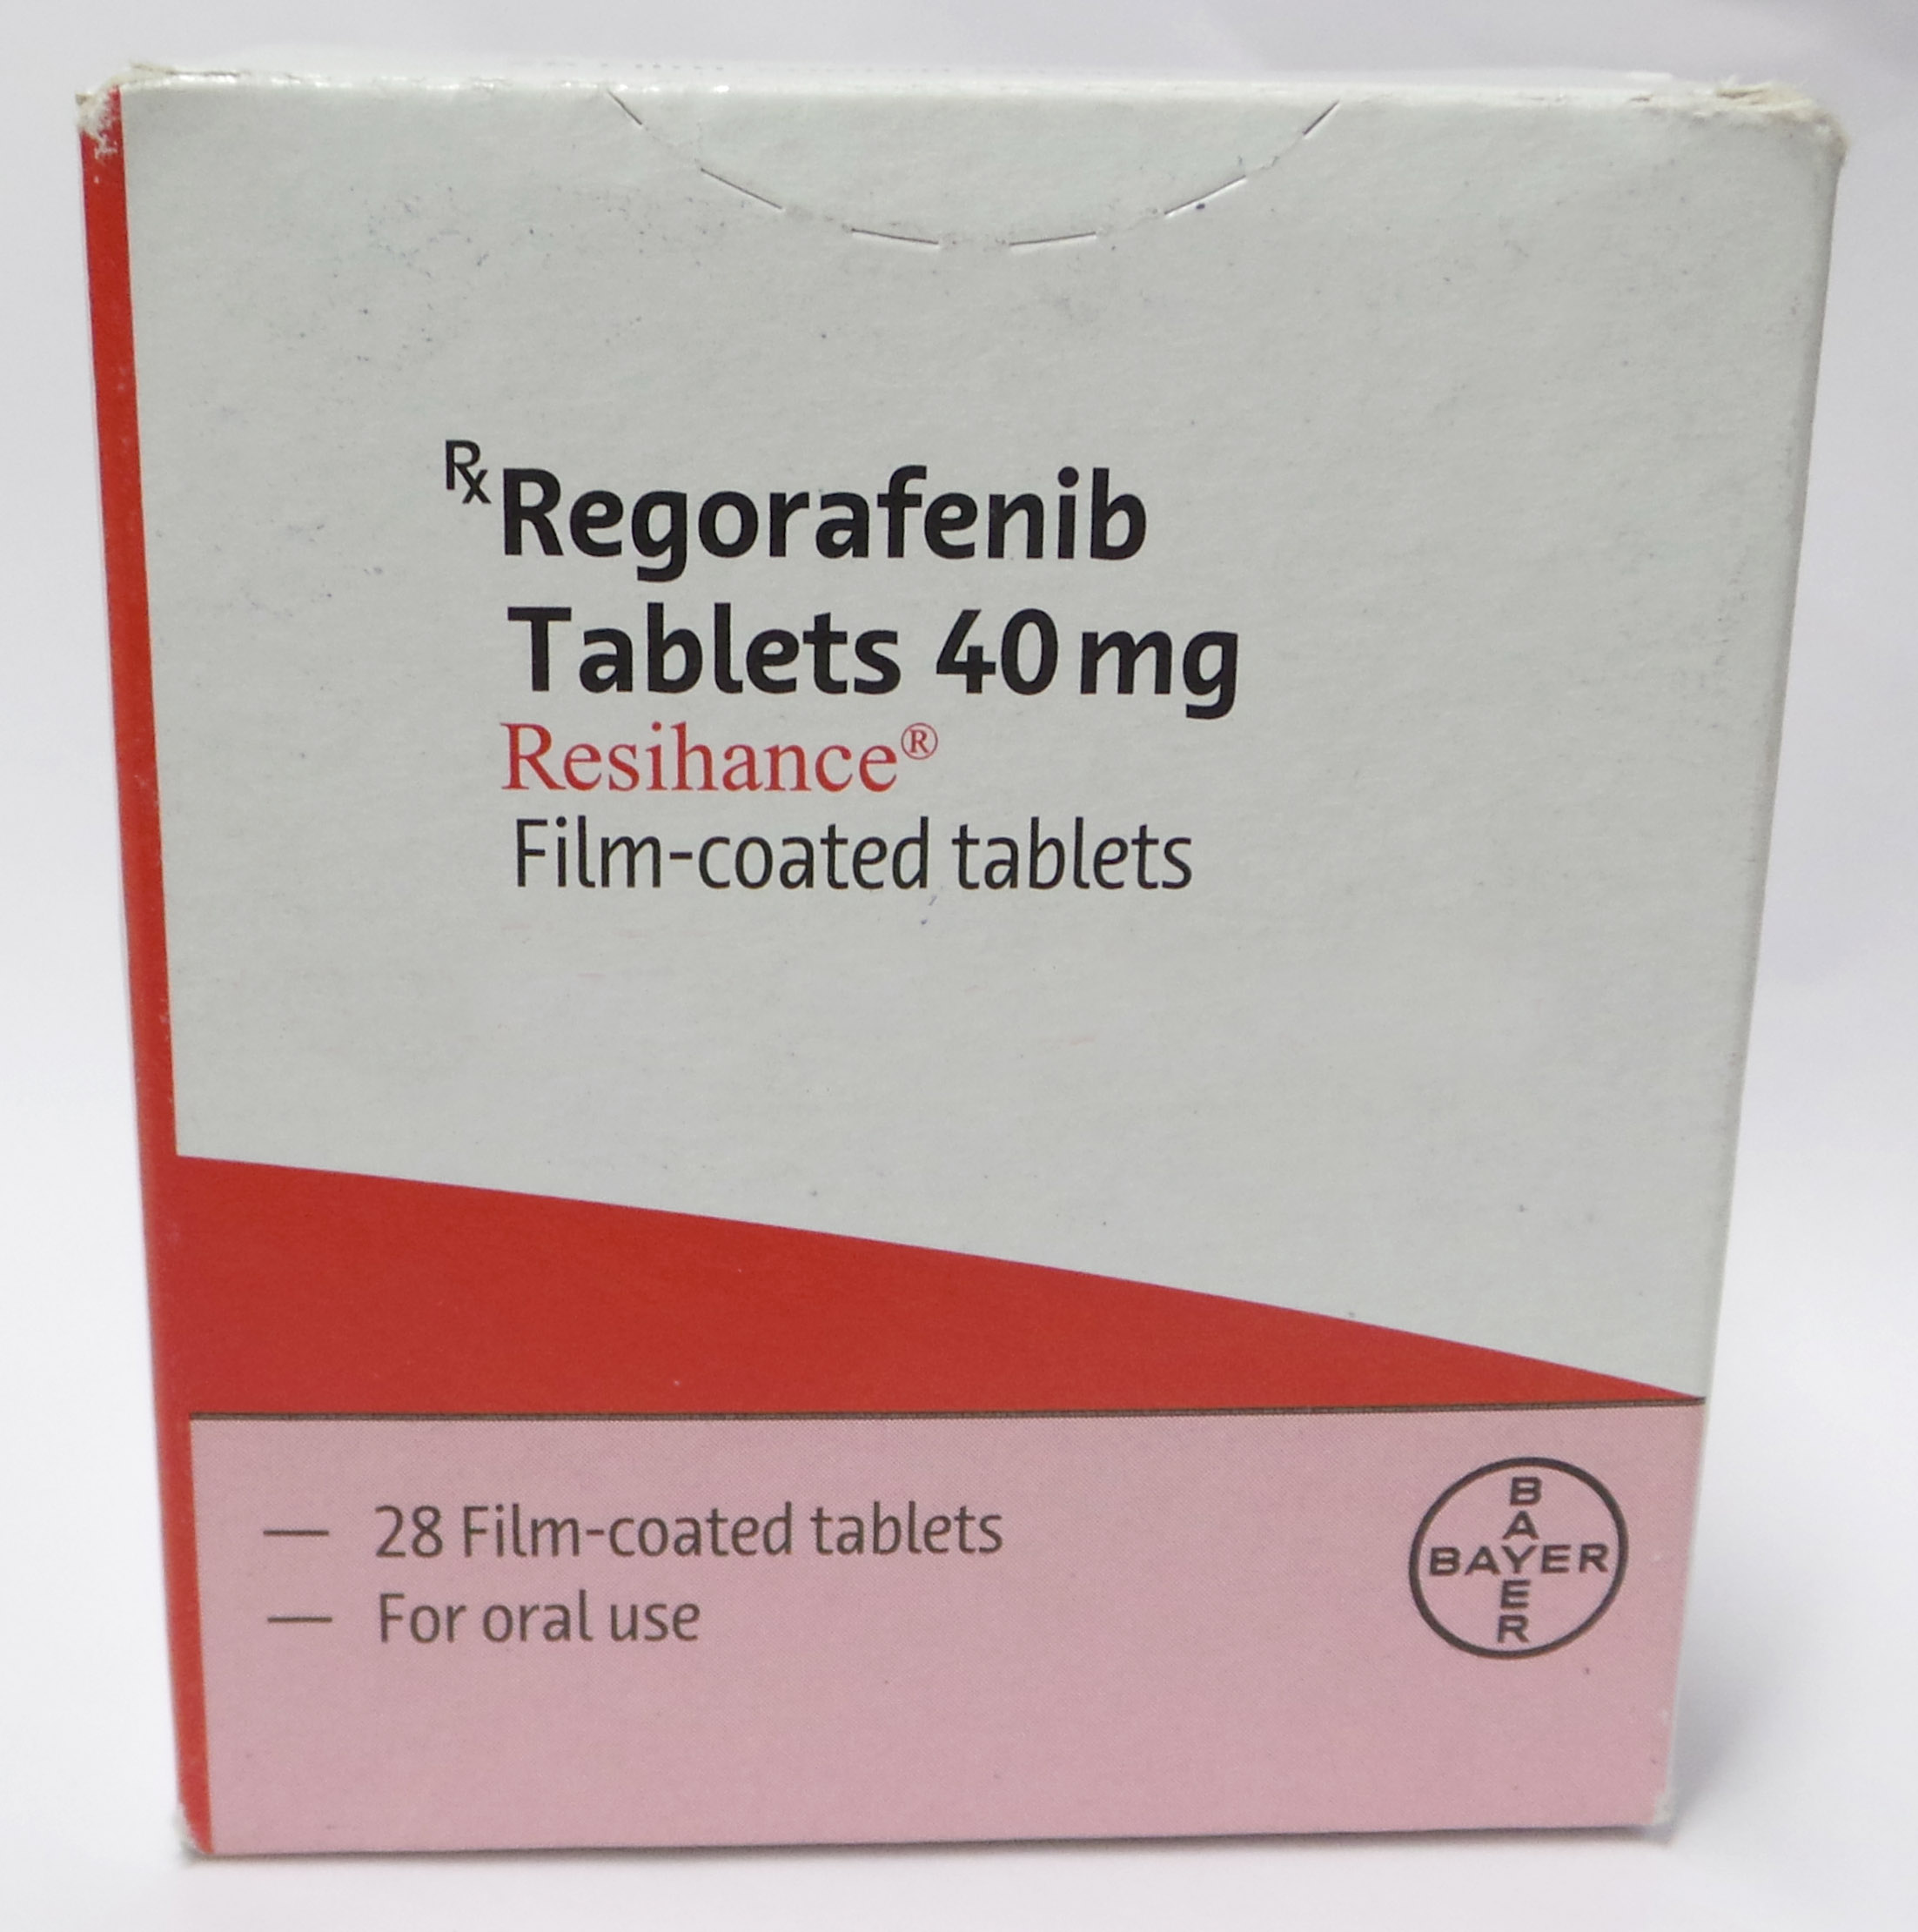 Regorafenib (Resihance) Tablets